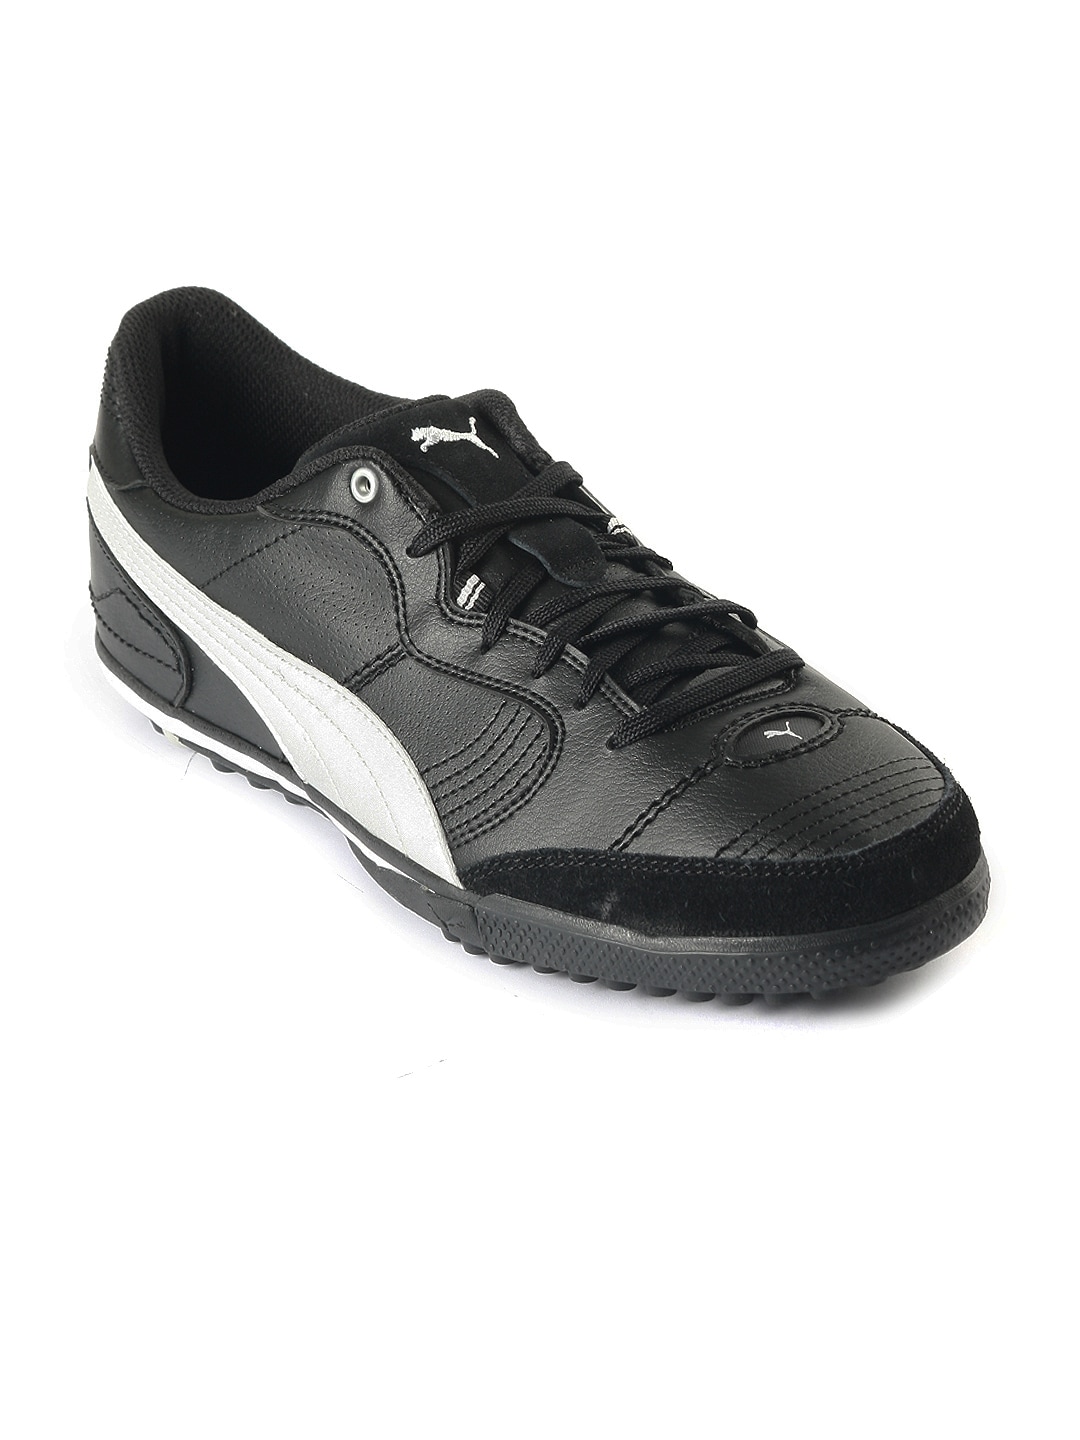 Puma Men Esito Vulc Cetto Black Sports Shoes